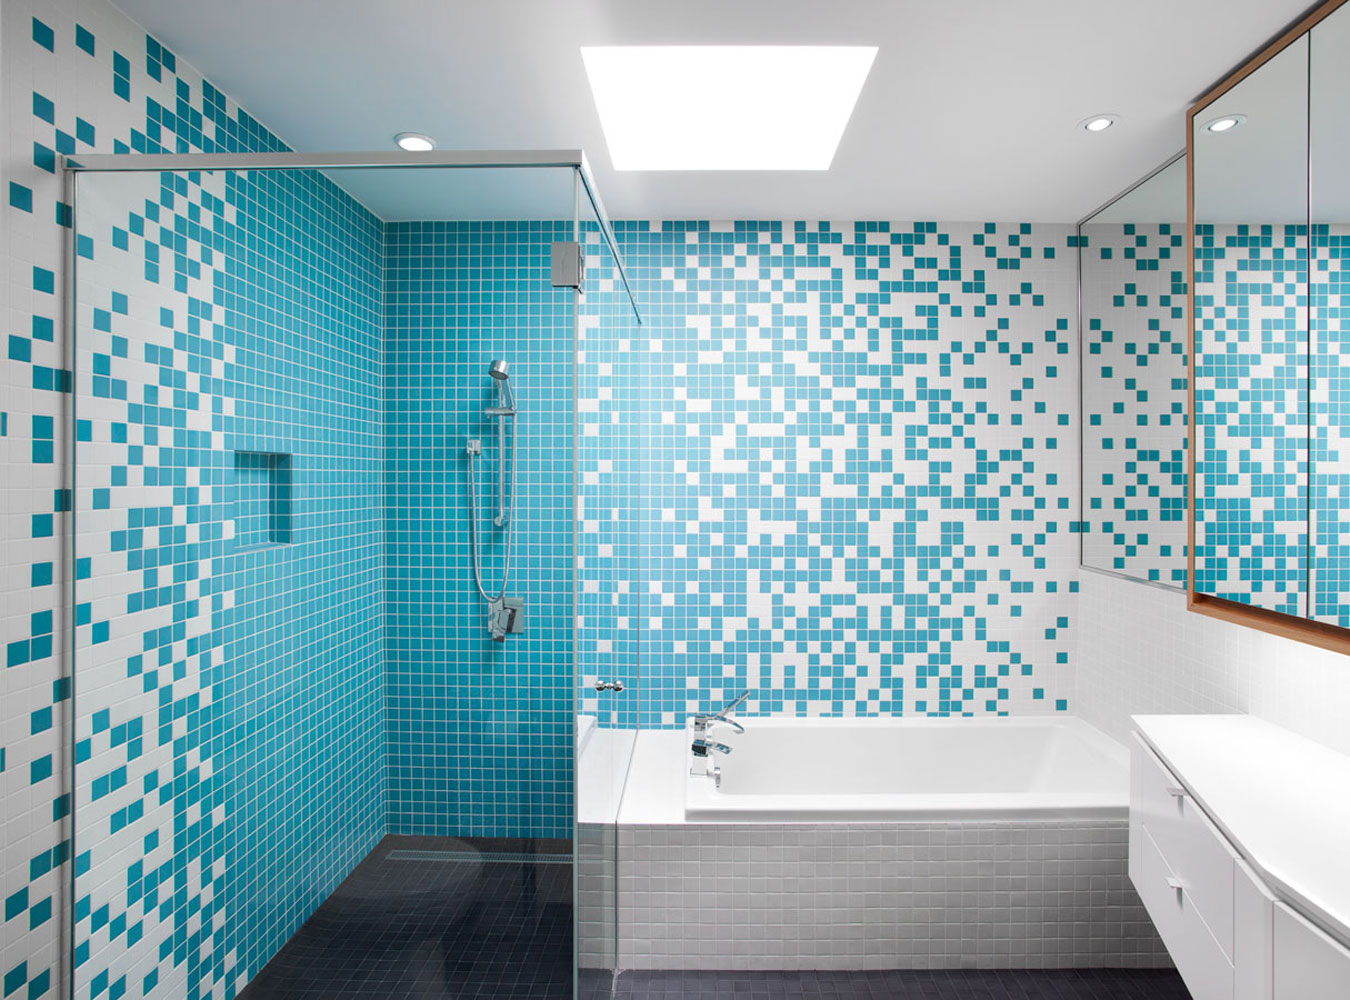  голубой дизайн ванной – керамическая настенная плитка голубого .